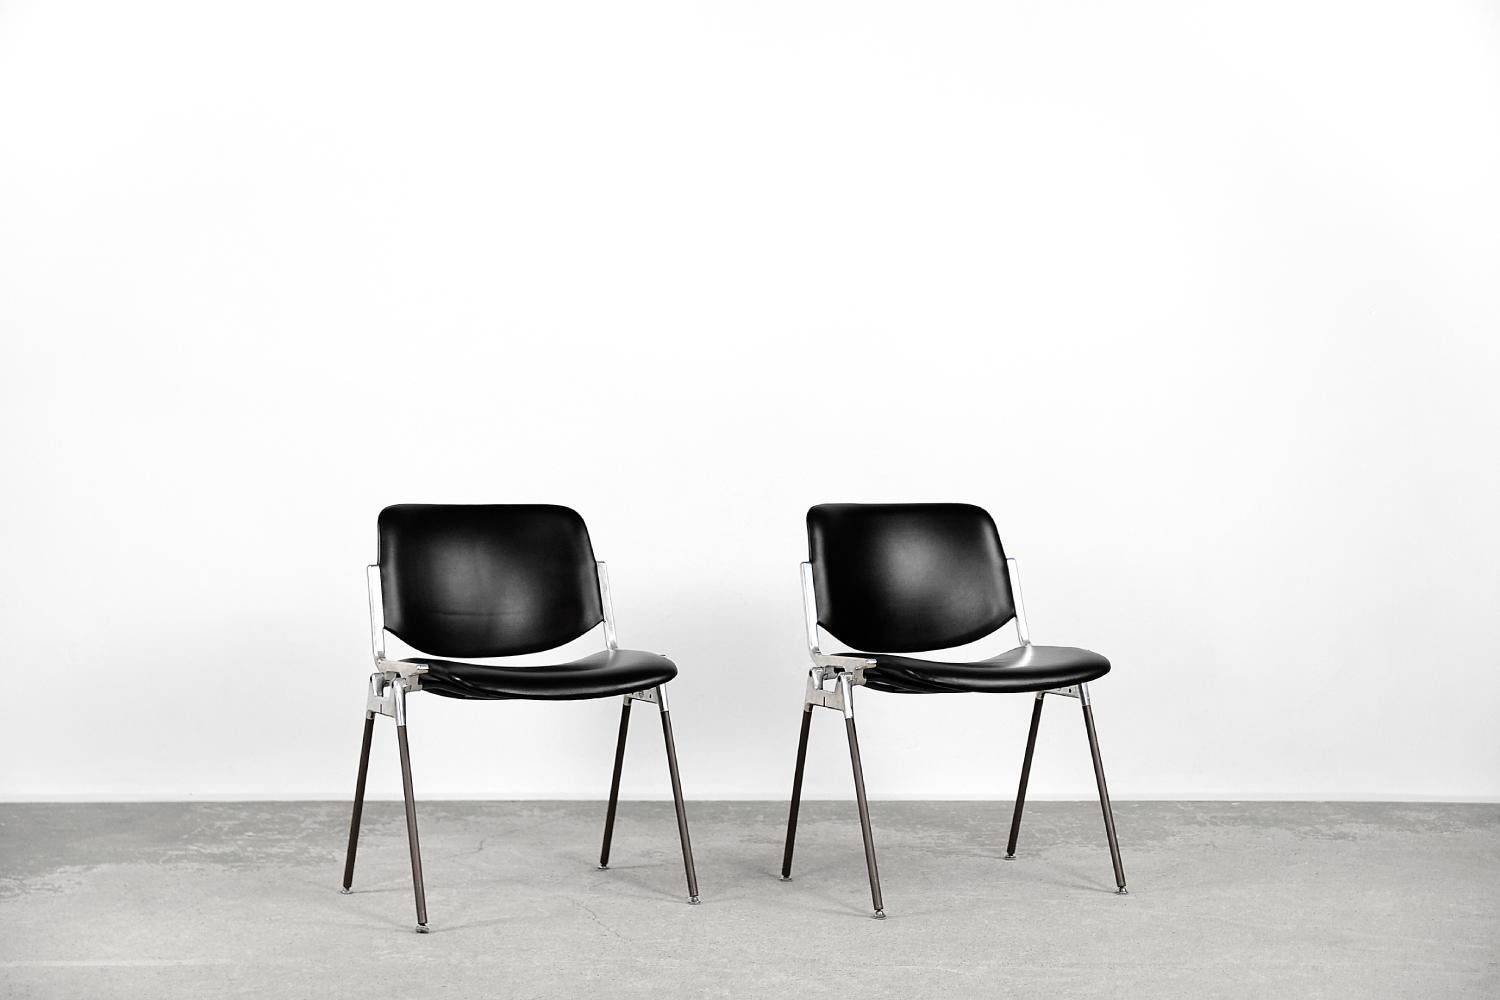 Cet ensemble de deux chaises DSC 106 a été conçu par Giancarla Piretti pour la société italienne Castelli en 1965. Il s'agit de l'un des modèles les plus connus des chaises de la marque et reste un objet au design innovant et attrayant. L'élégant